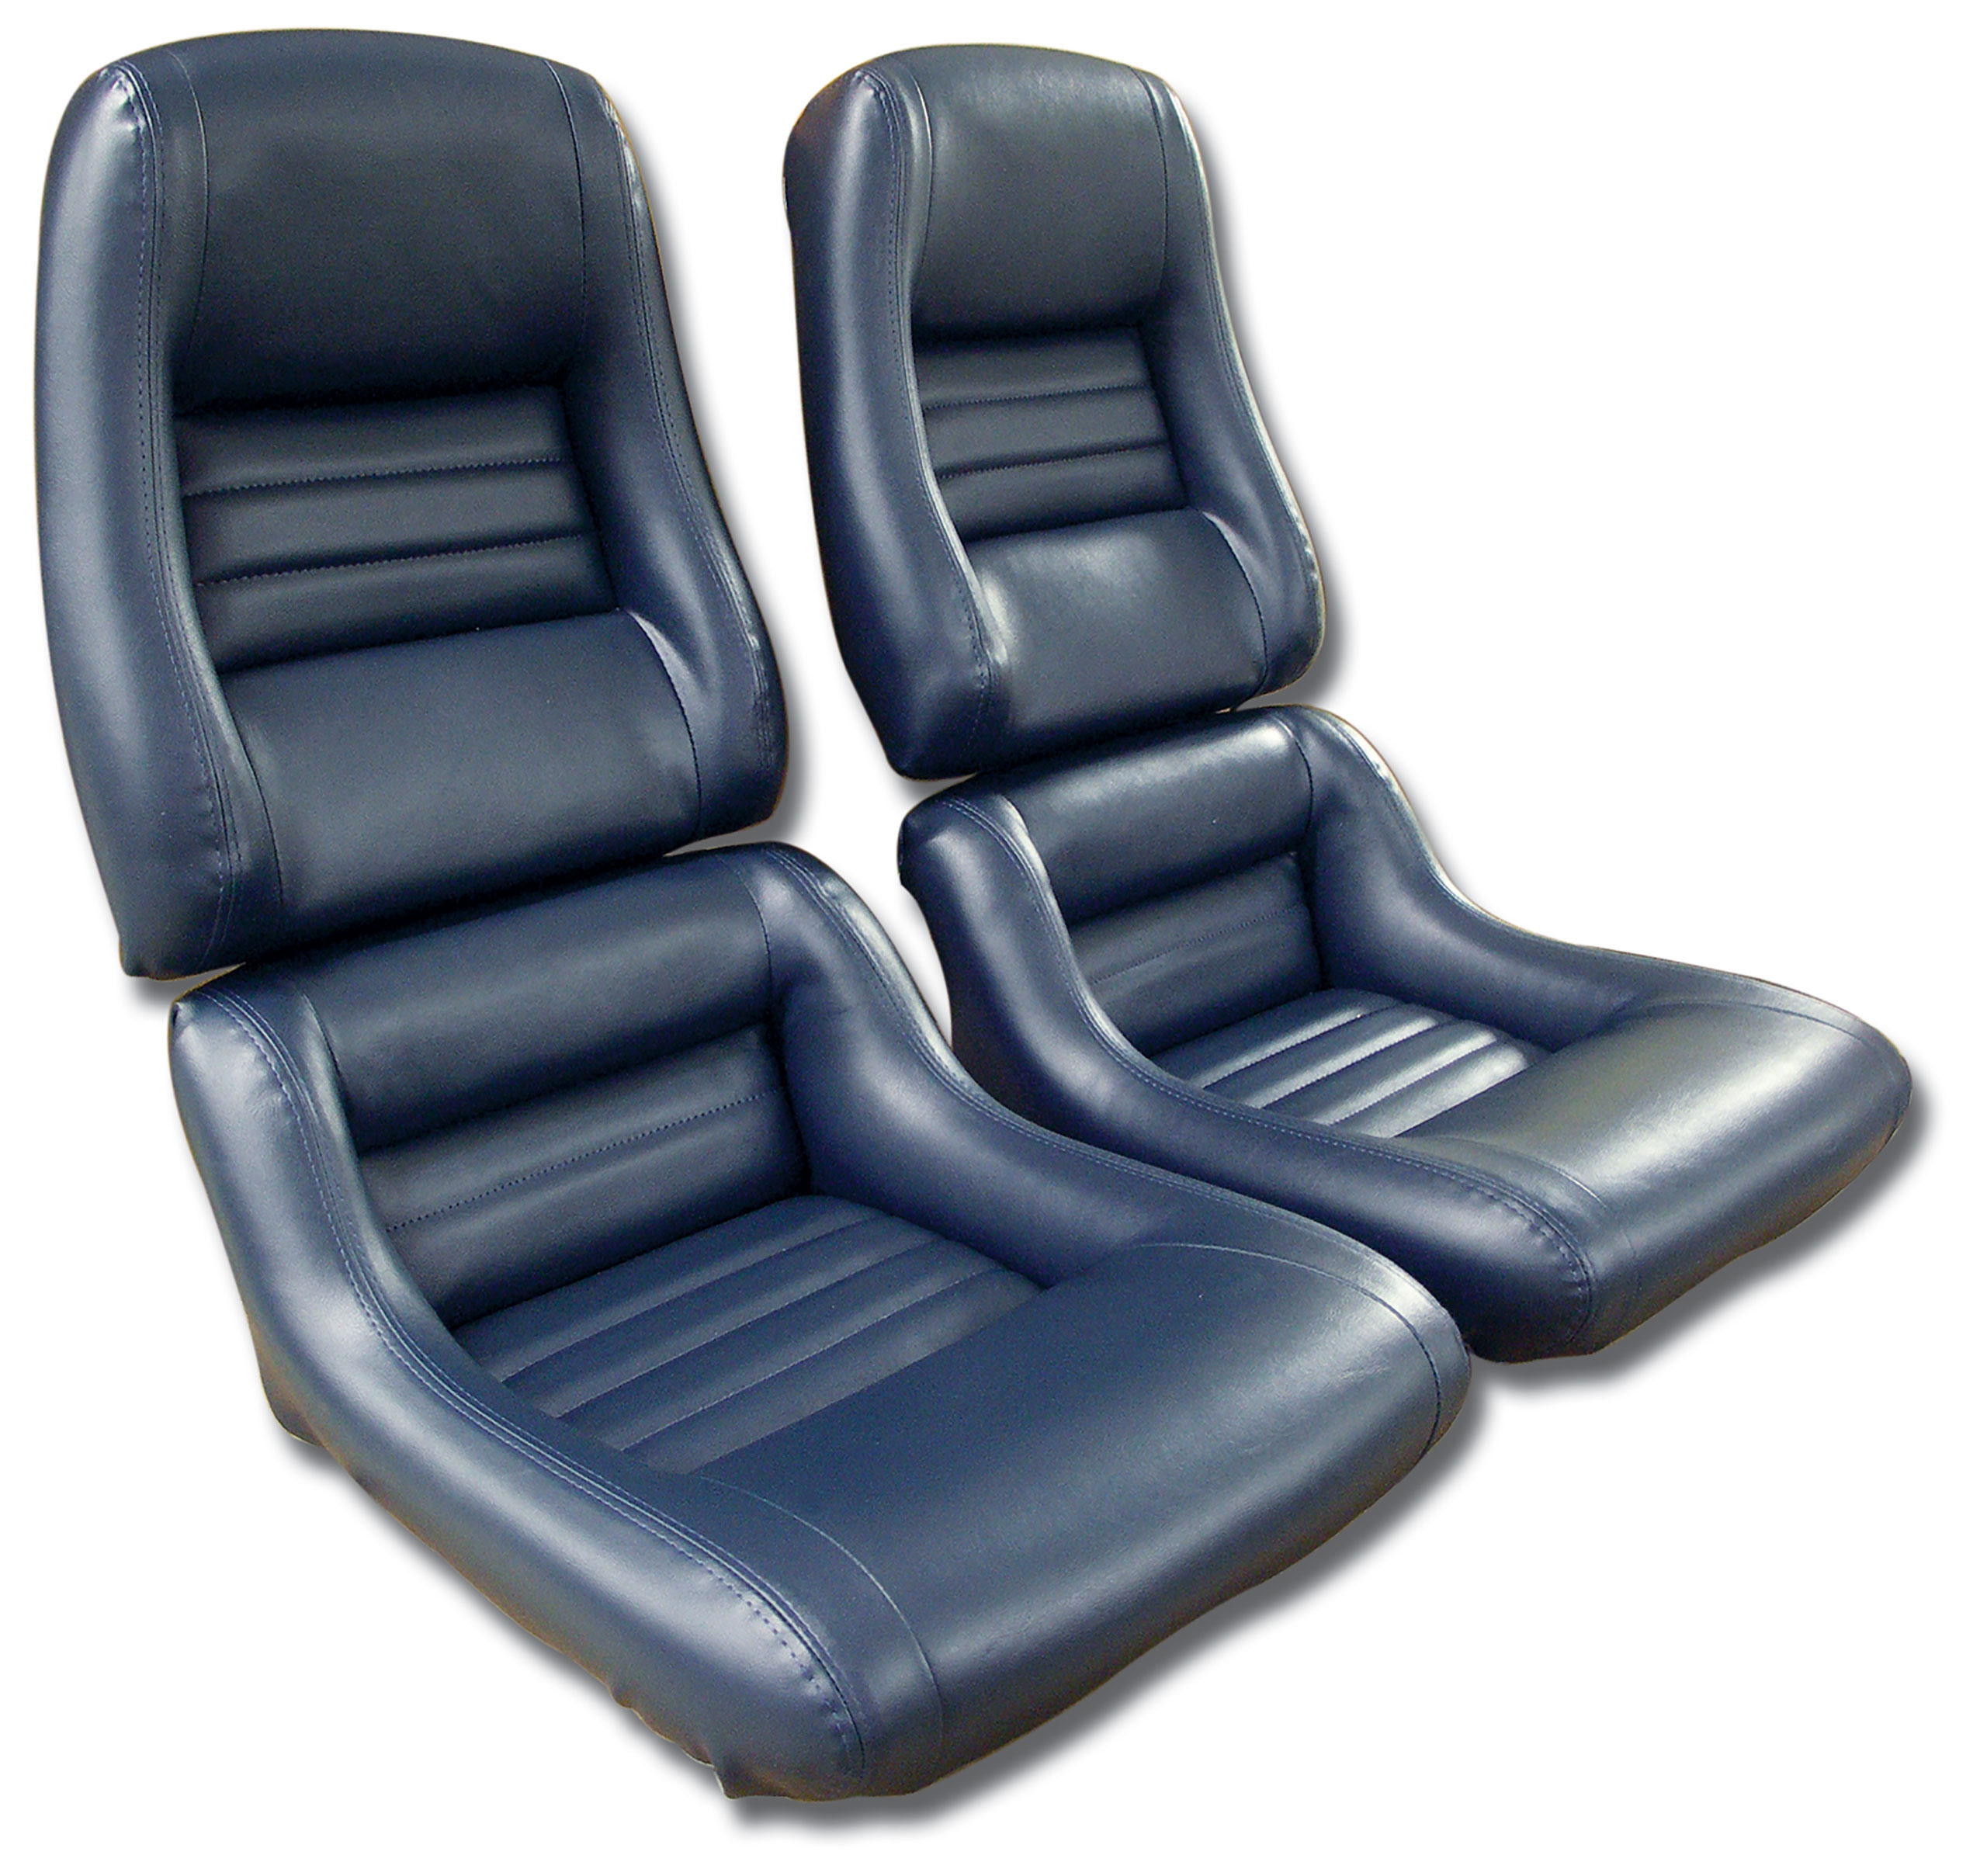 1982 Corvette C3 "Leather-Like" Vinyl Seat Covers Dark Blue 2" Bolster CA-421646 